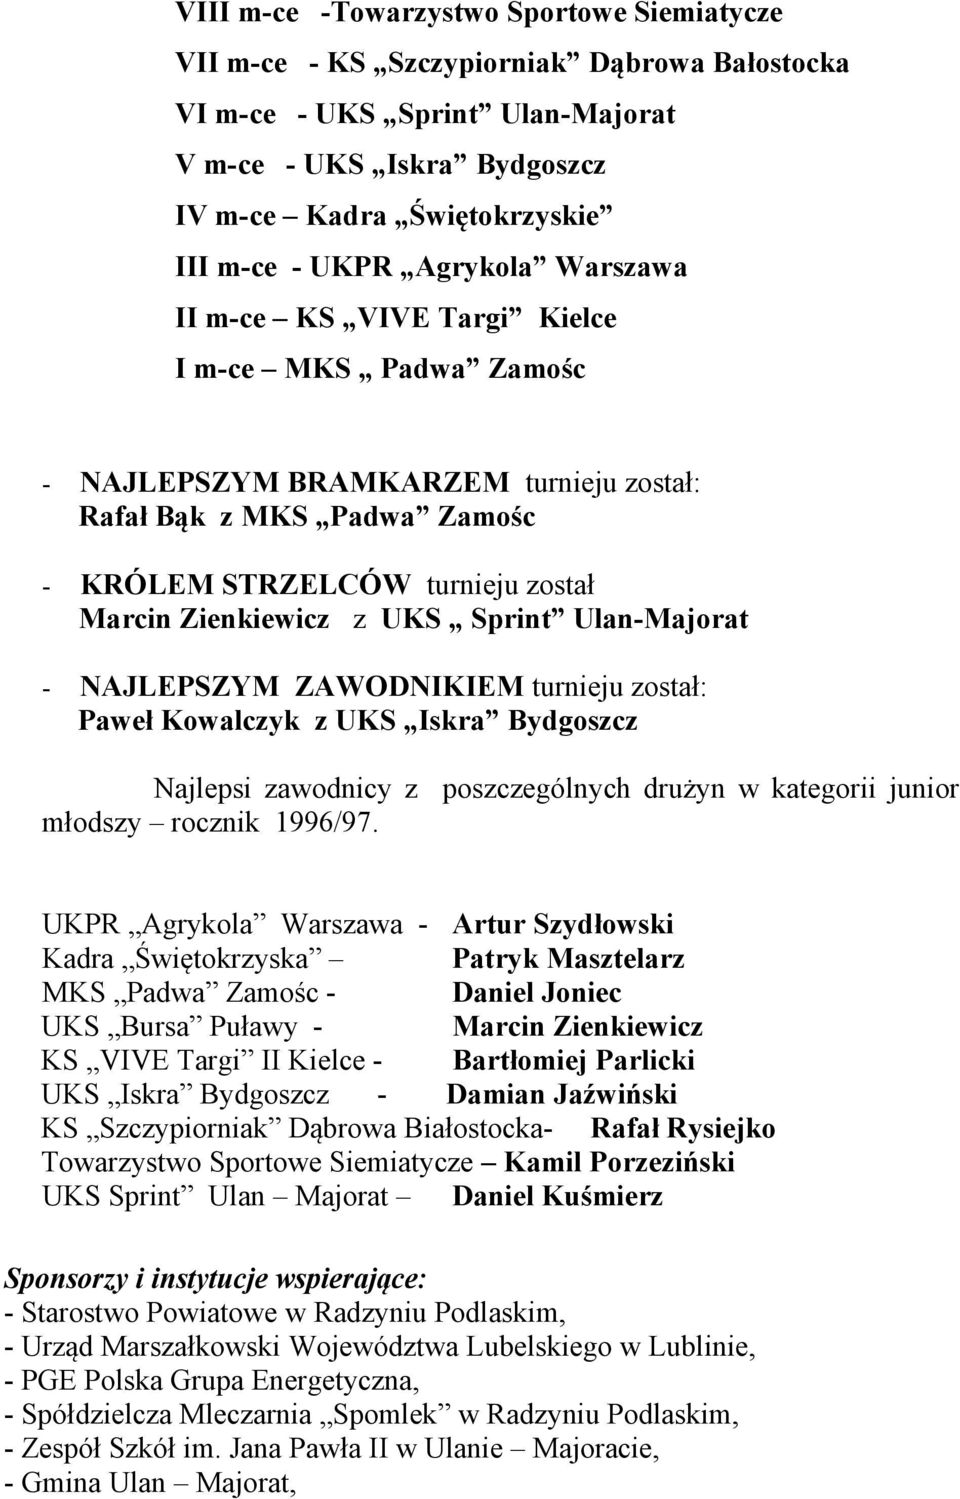 UKS Sprint Ulan-Majorat - NAJLEPSZYM ZAWODNIKIEM turnieju został: Paweł Kowalczyk z UKS Iskra Bydgoszcz Najlepsi zawodnicy z poszczególnych drużyn w kategorii junior młodszy rocznik 1996/97.